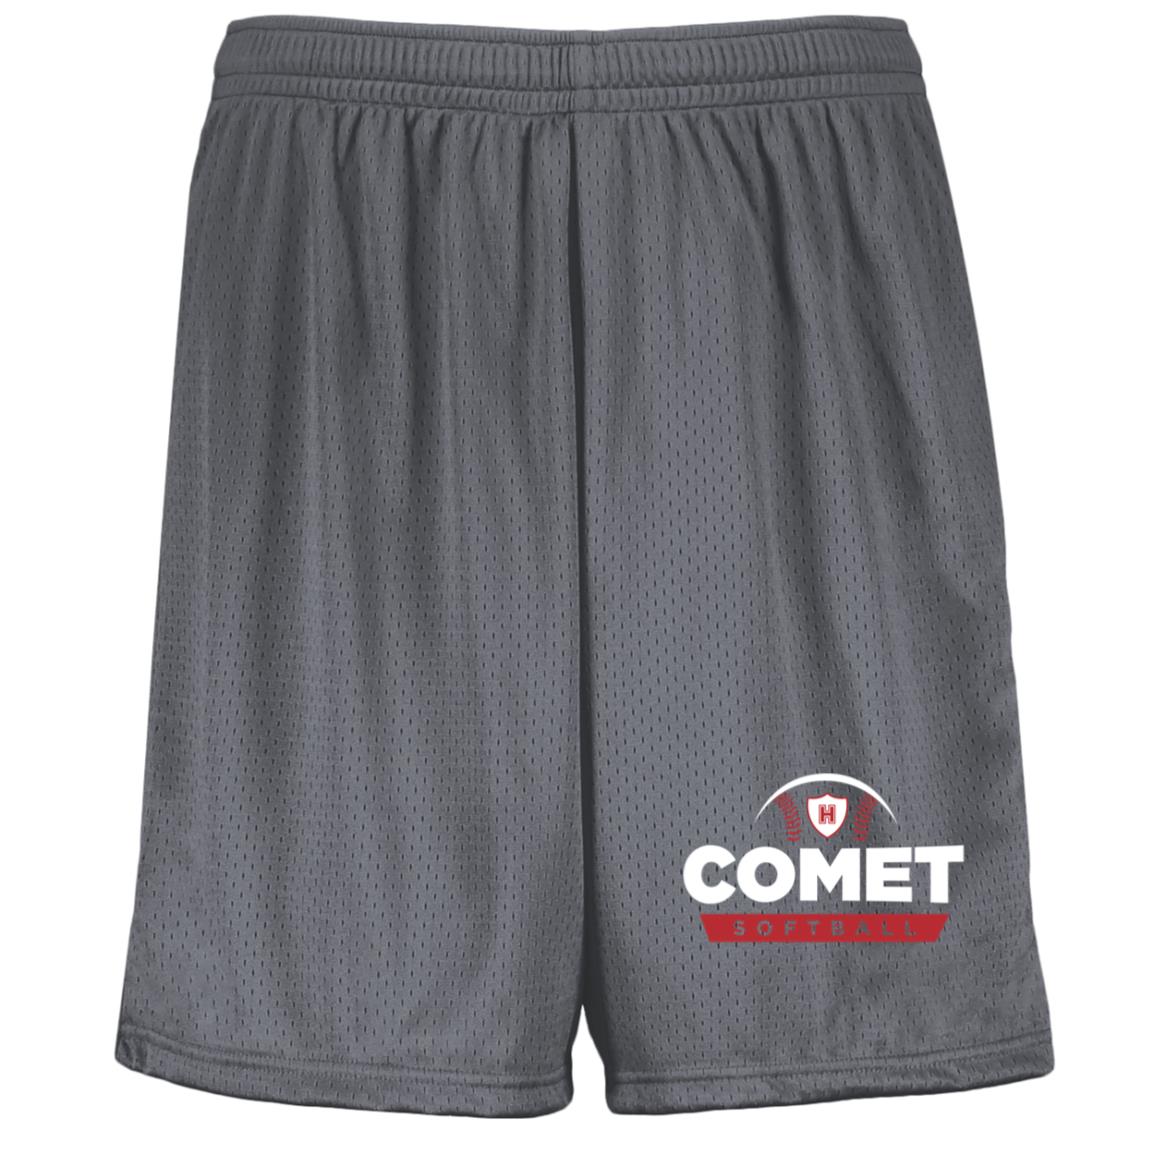 Comet Softball - Youth Moisture-Wicking Mesh Shorts